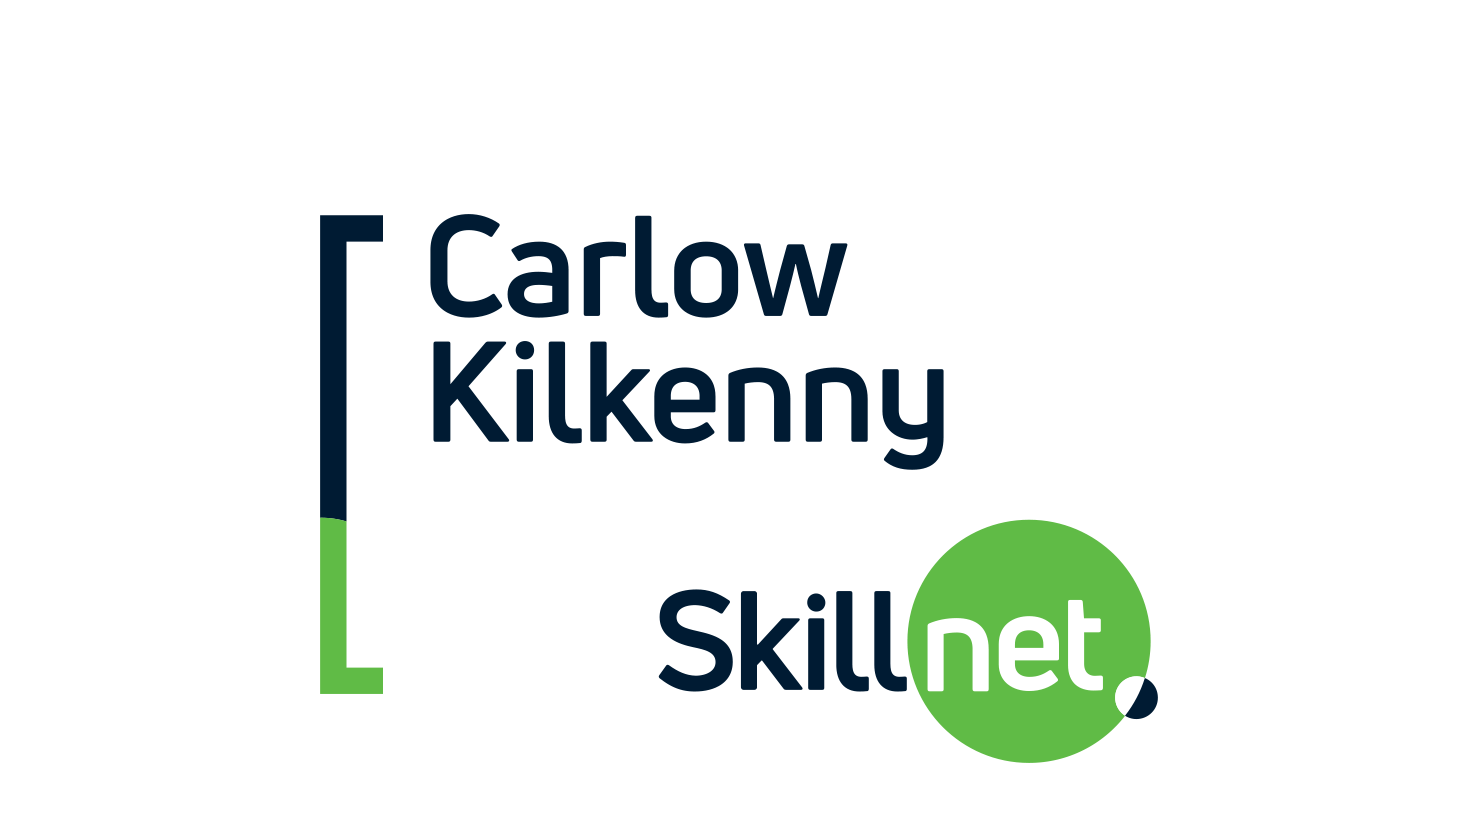 Carlow Kilkenny Skillnet